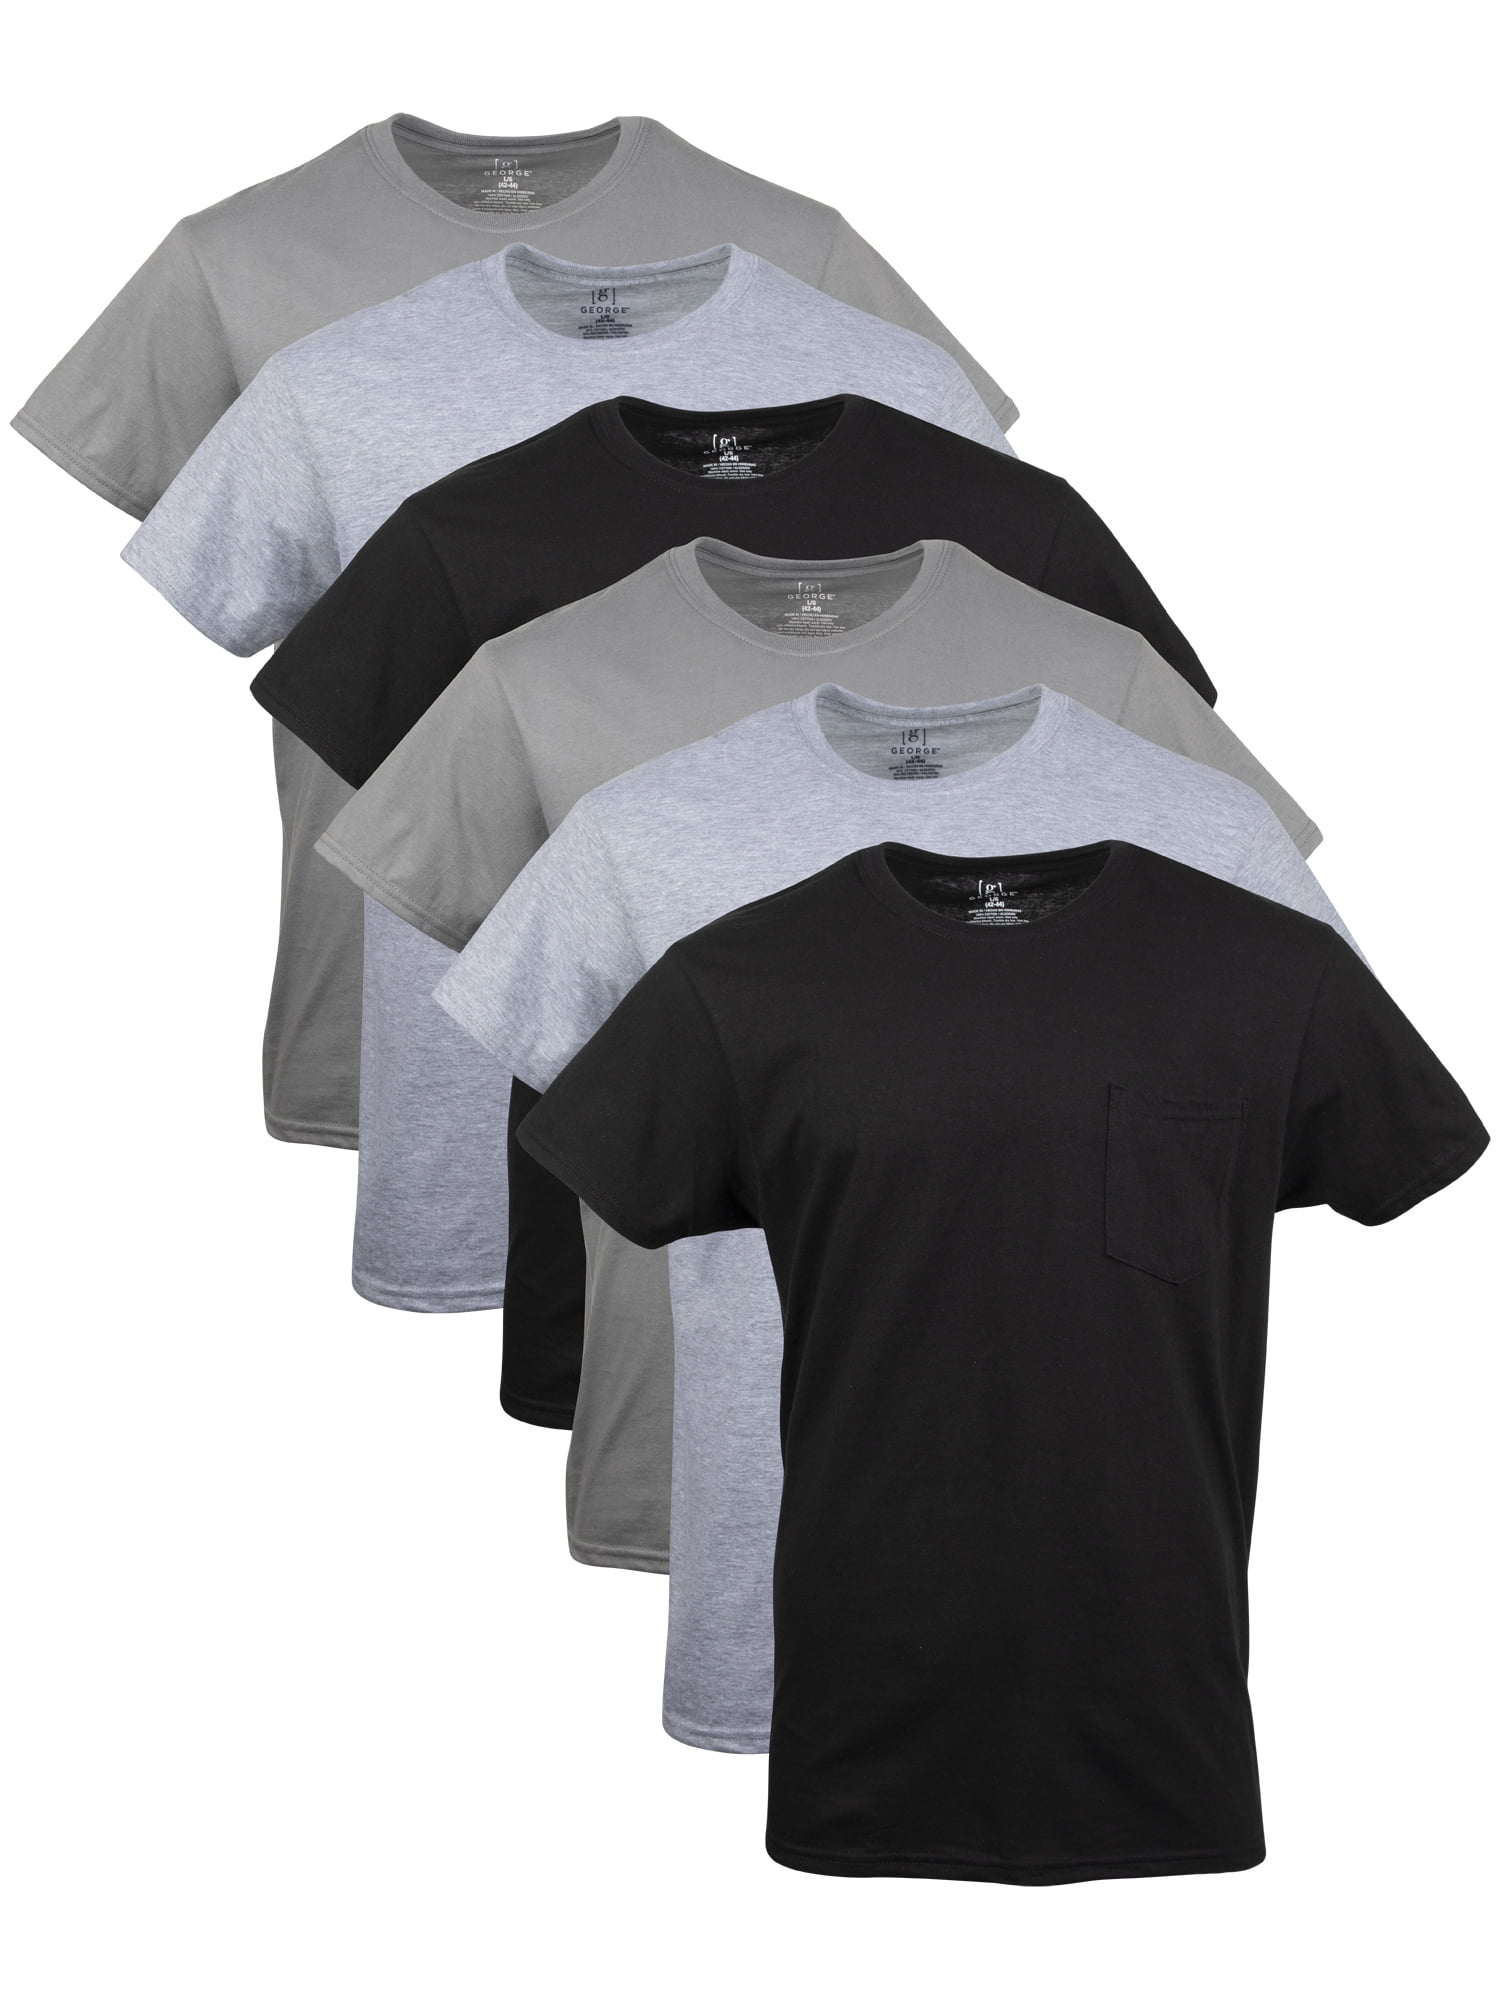 George Men's Pocket T-Shirts, 6-Pack